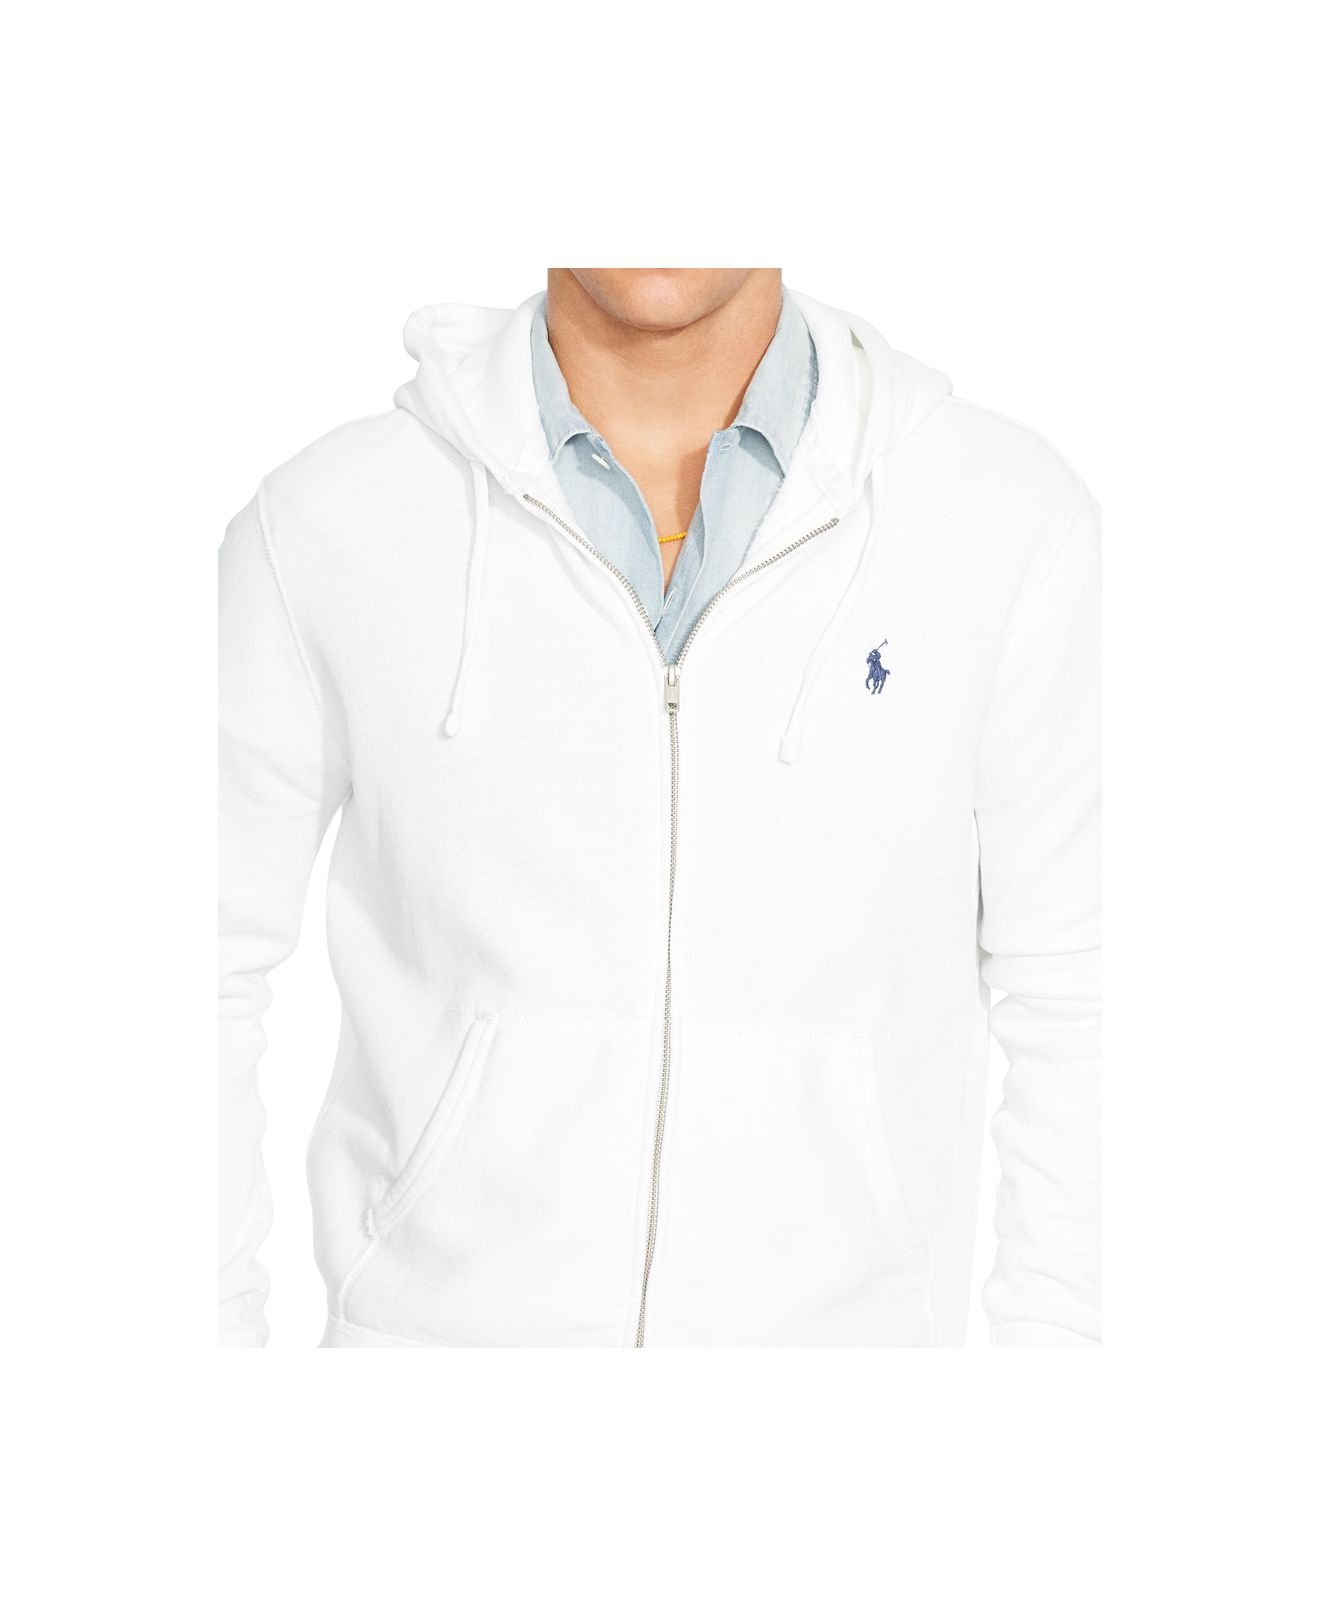 Polo Ralph Lauren Full-Zip Fleece Hoodie in White for Men - Lyst